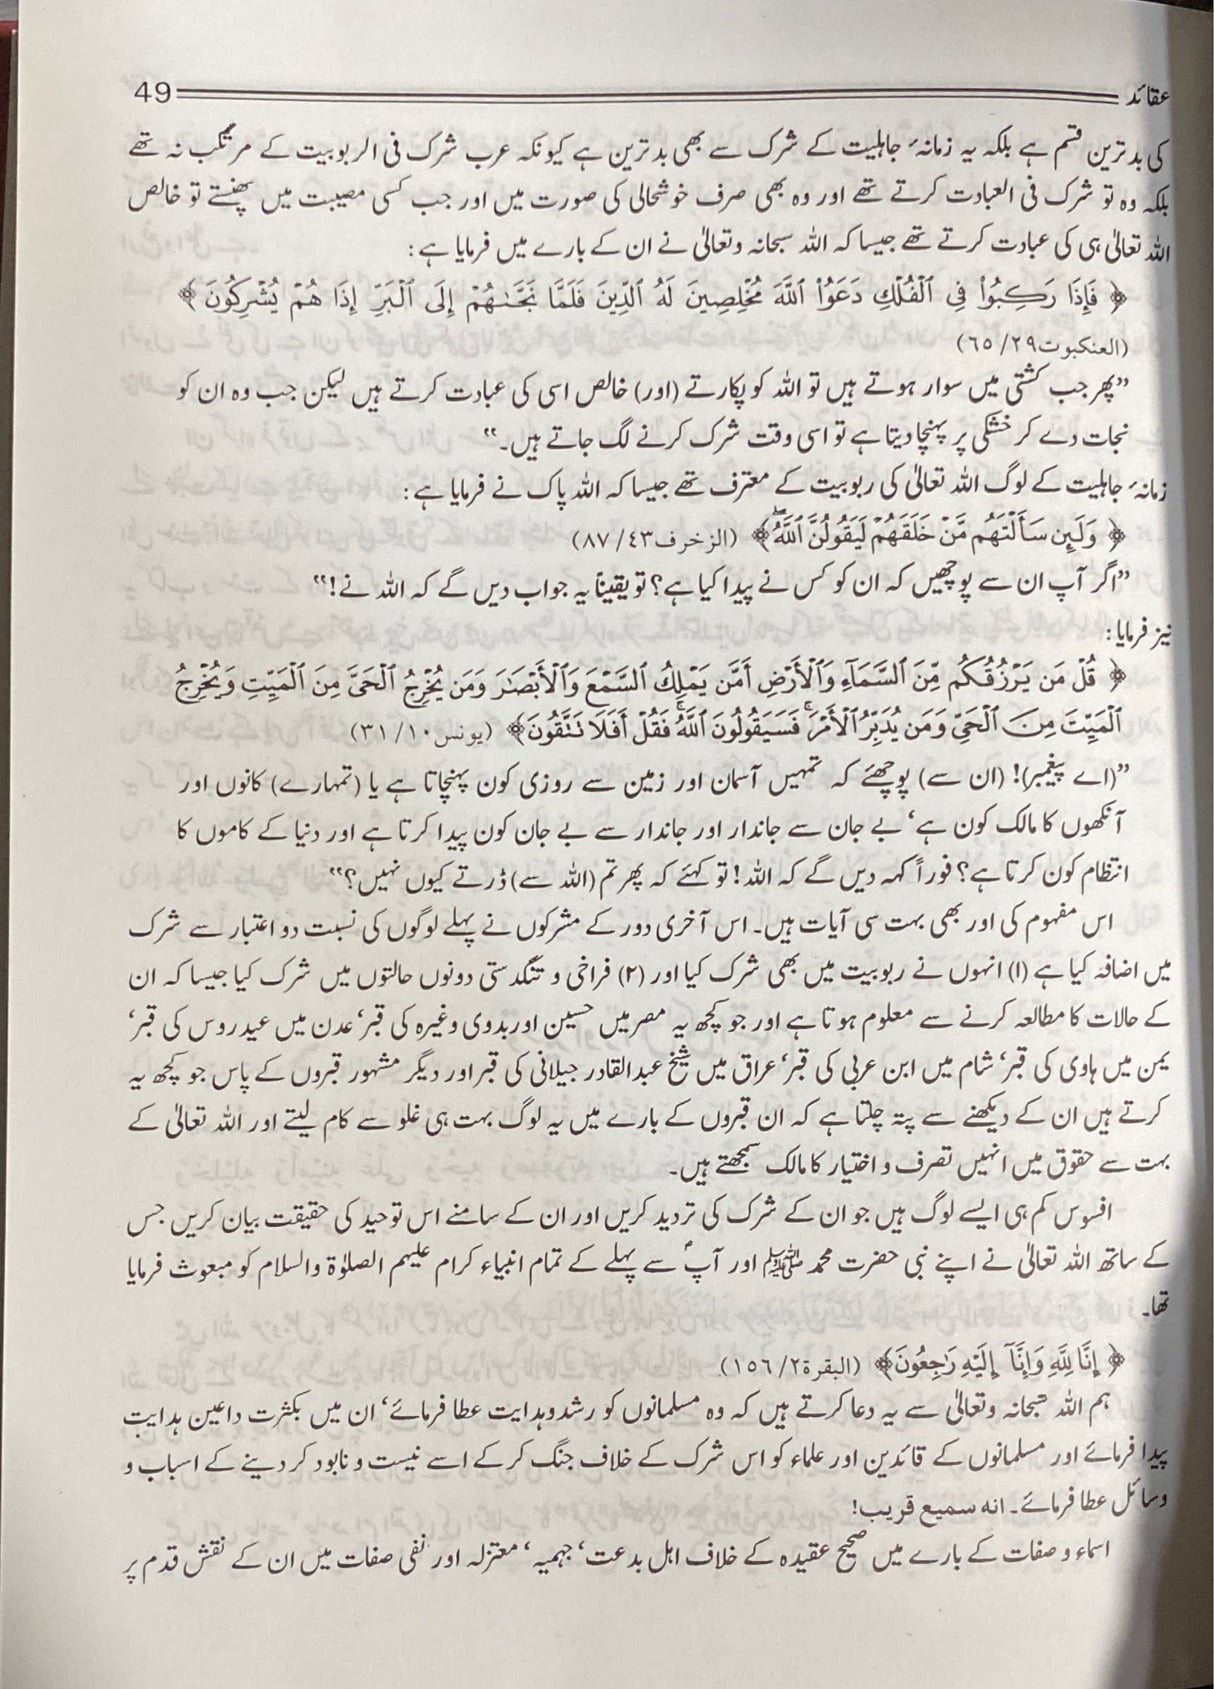 Urdu Maqalat Wa Fatawa Abdul Aziz Bin Baaz